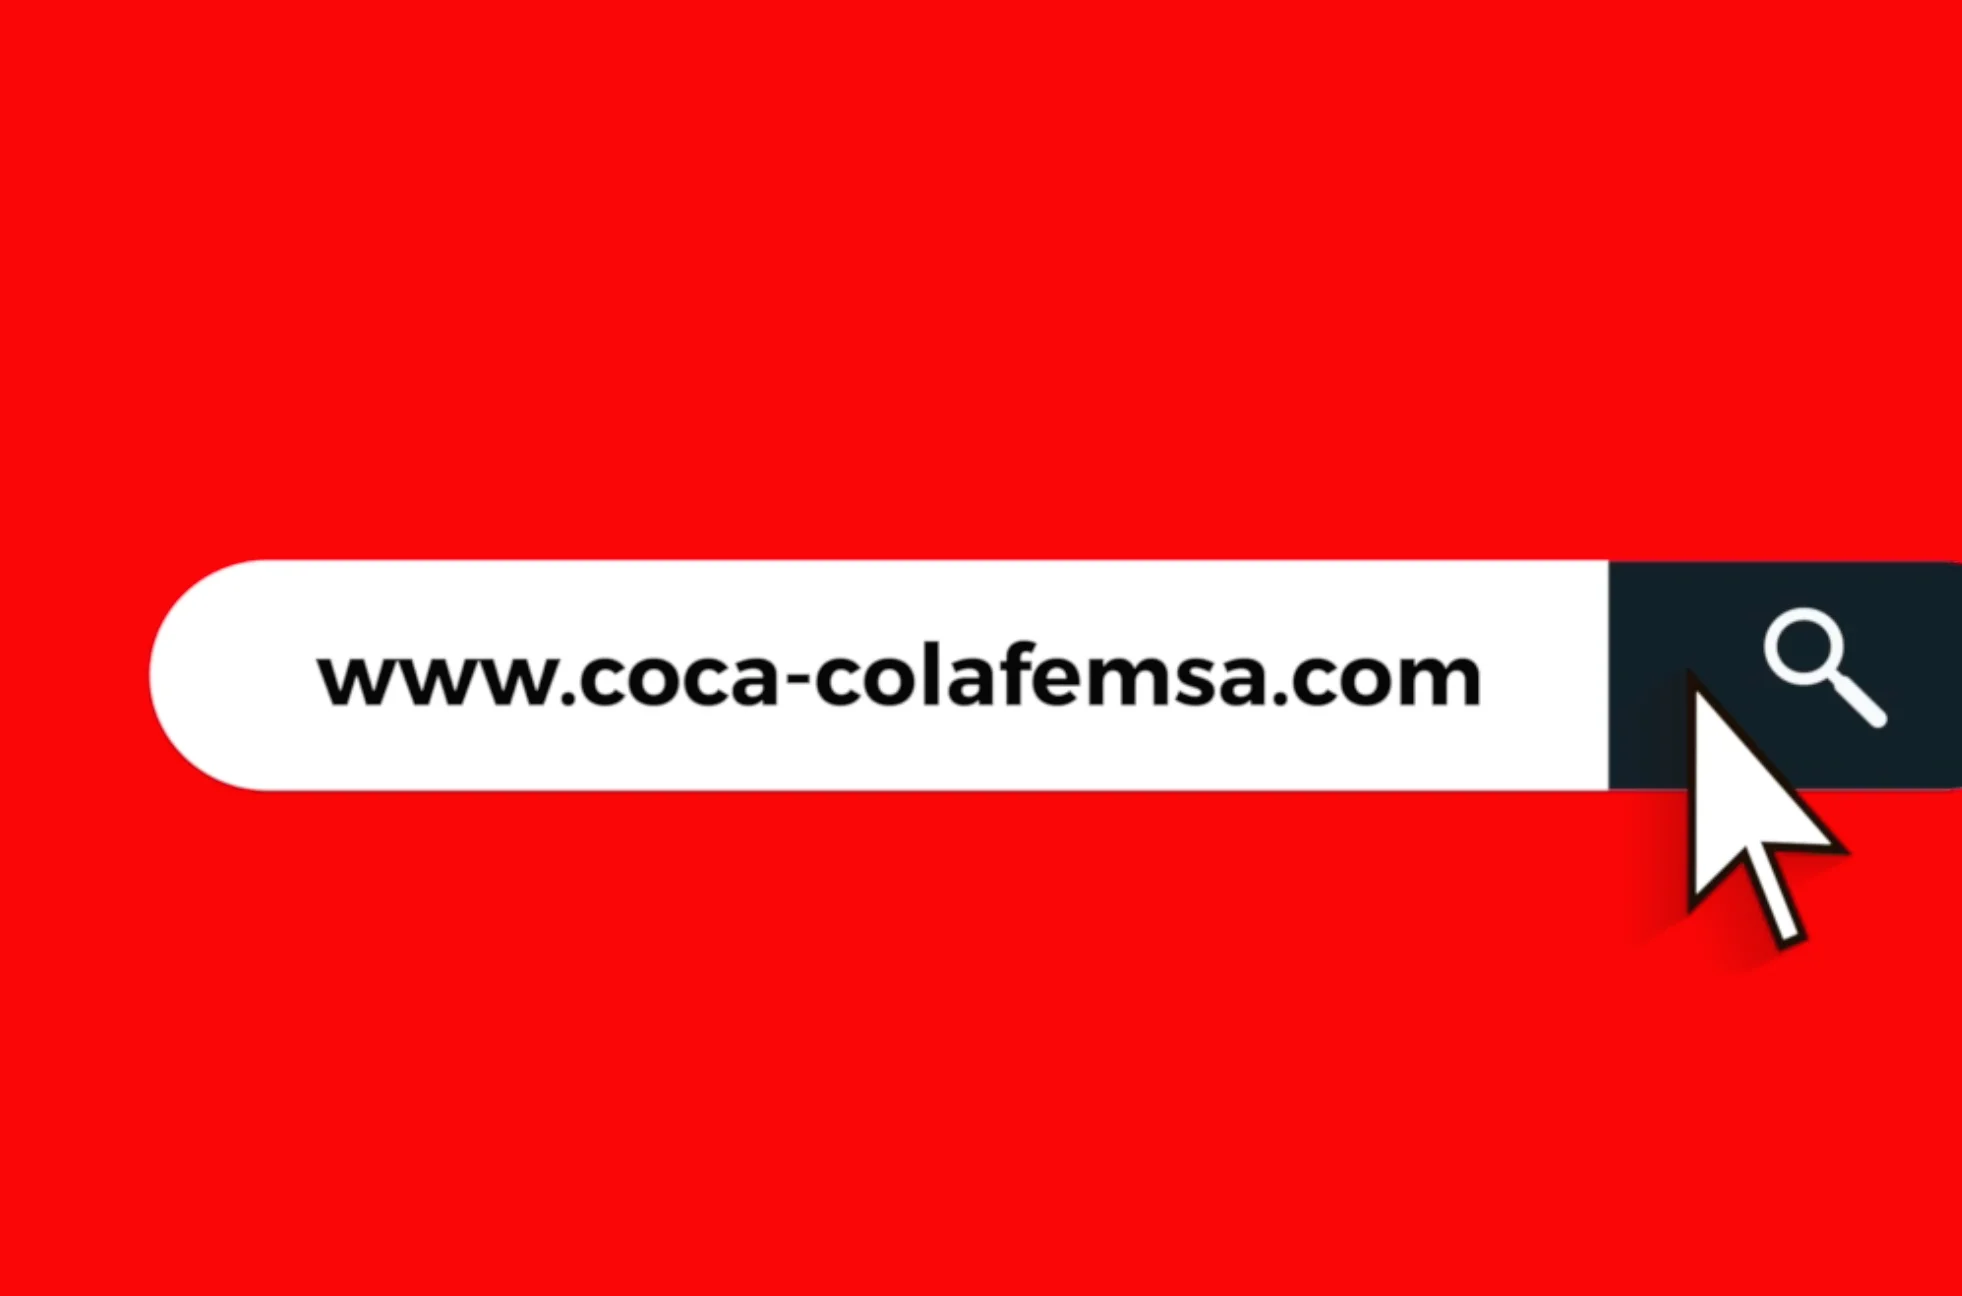 Coca-Cola FEMSA lanza su nuevo website